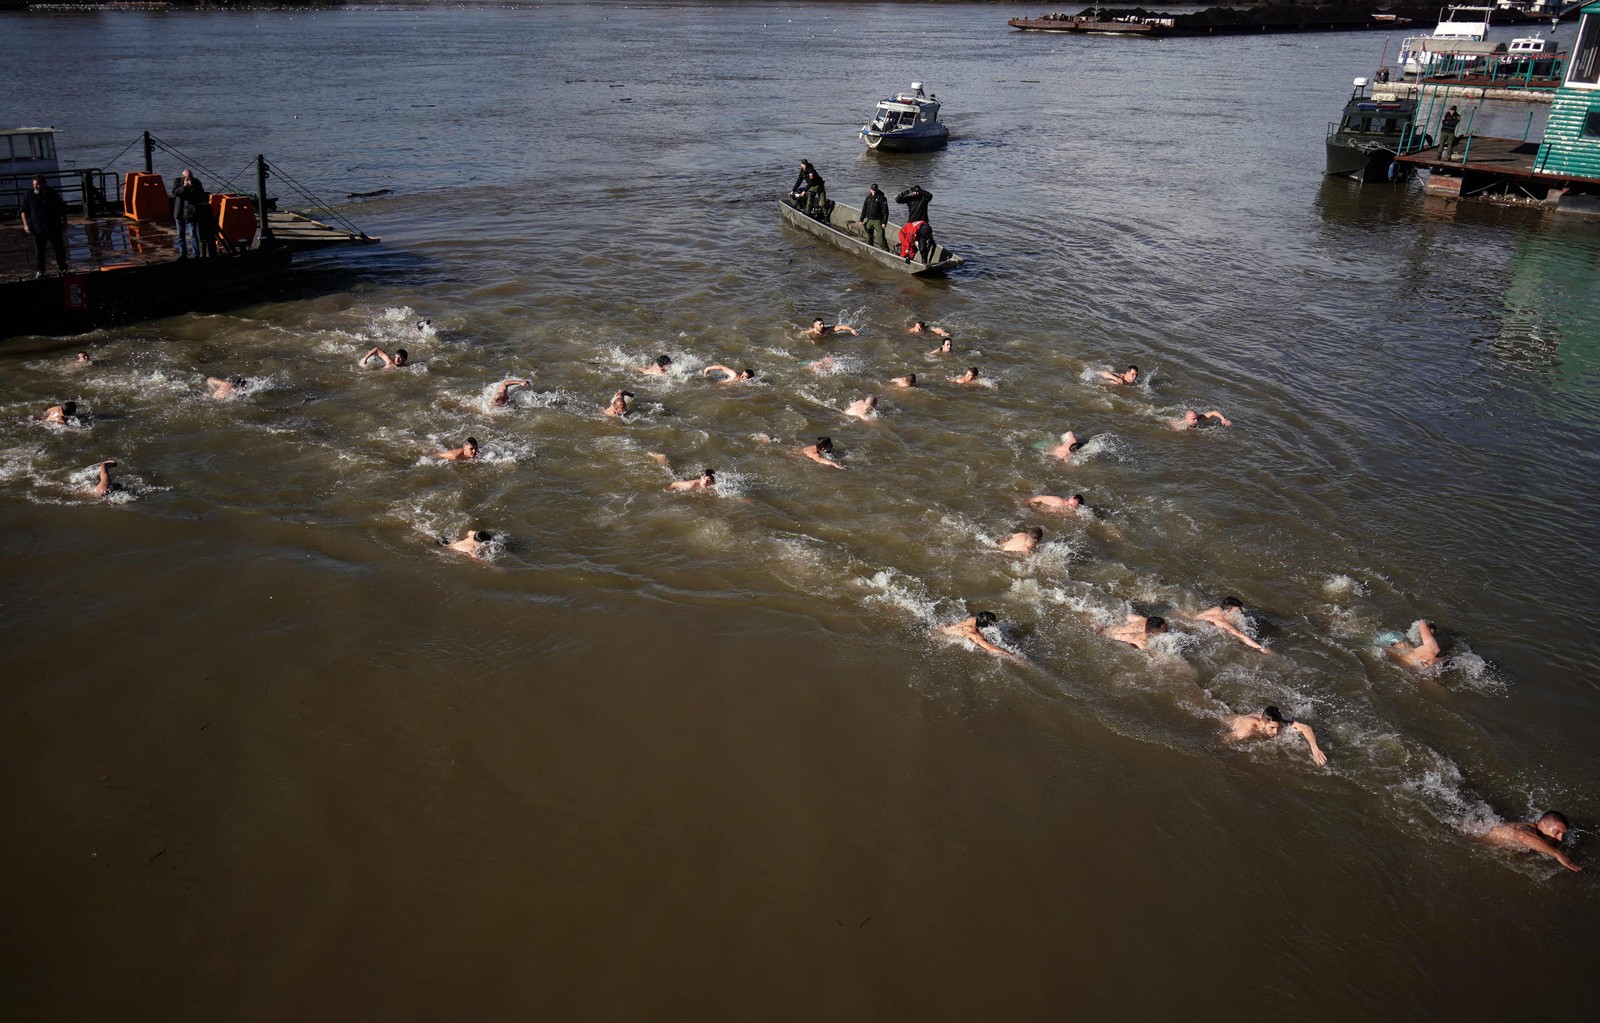 Fiéis ortodoxos sérvios nadam na água fria do rio Sava para marcar a próxima Epifania, purificando-se com água considerada sagrada para o dia, em Belgrado. — Foto: OLIVER BUNIC / AFP